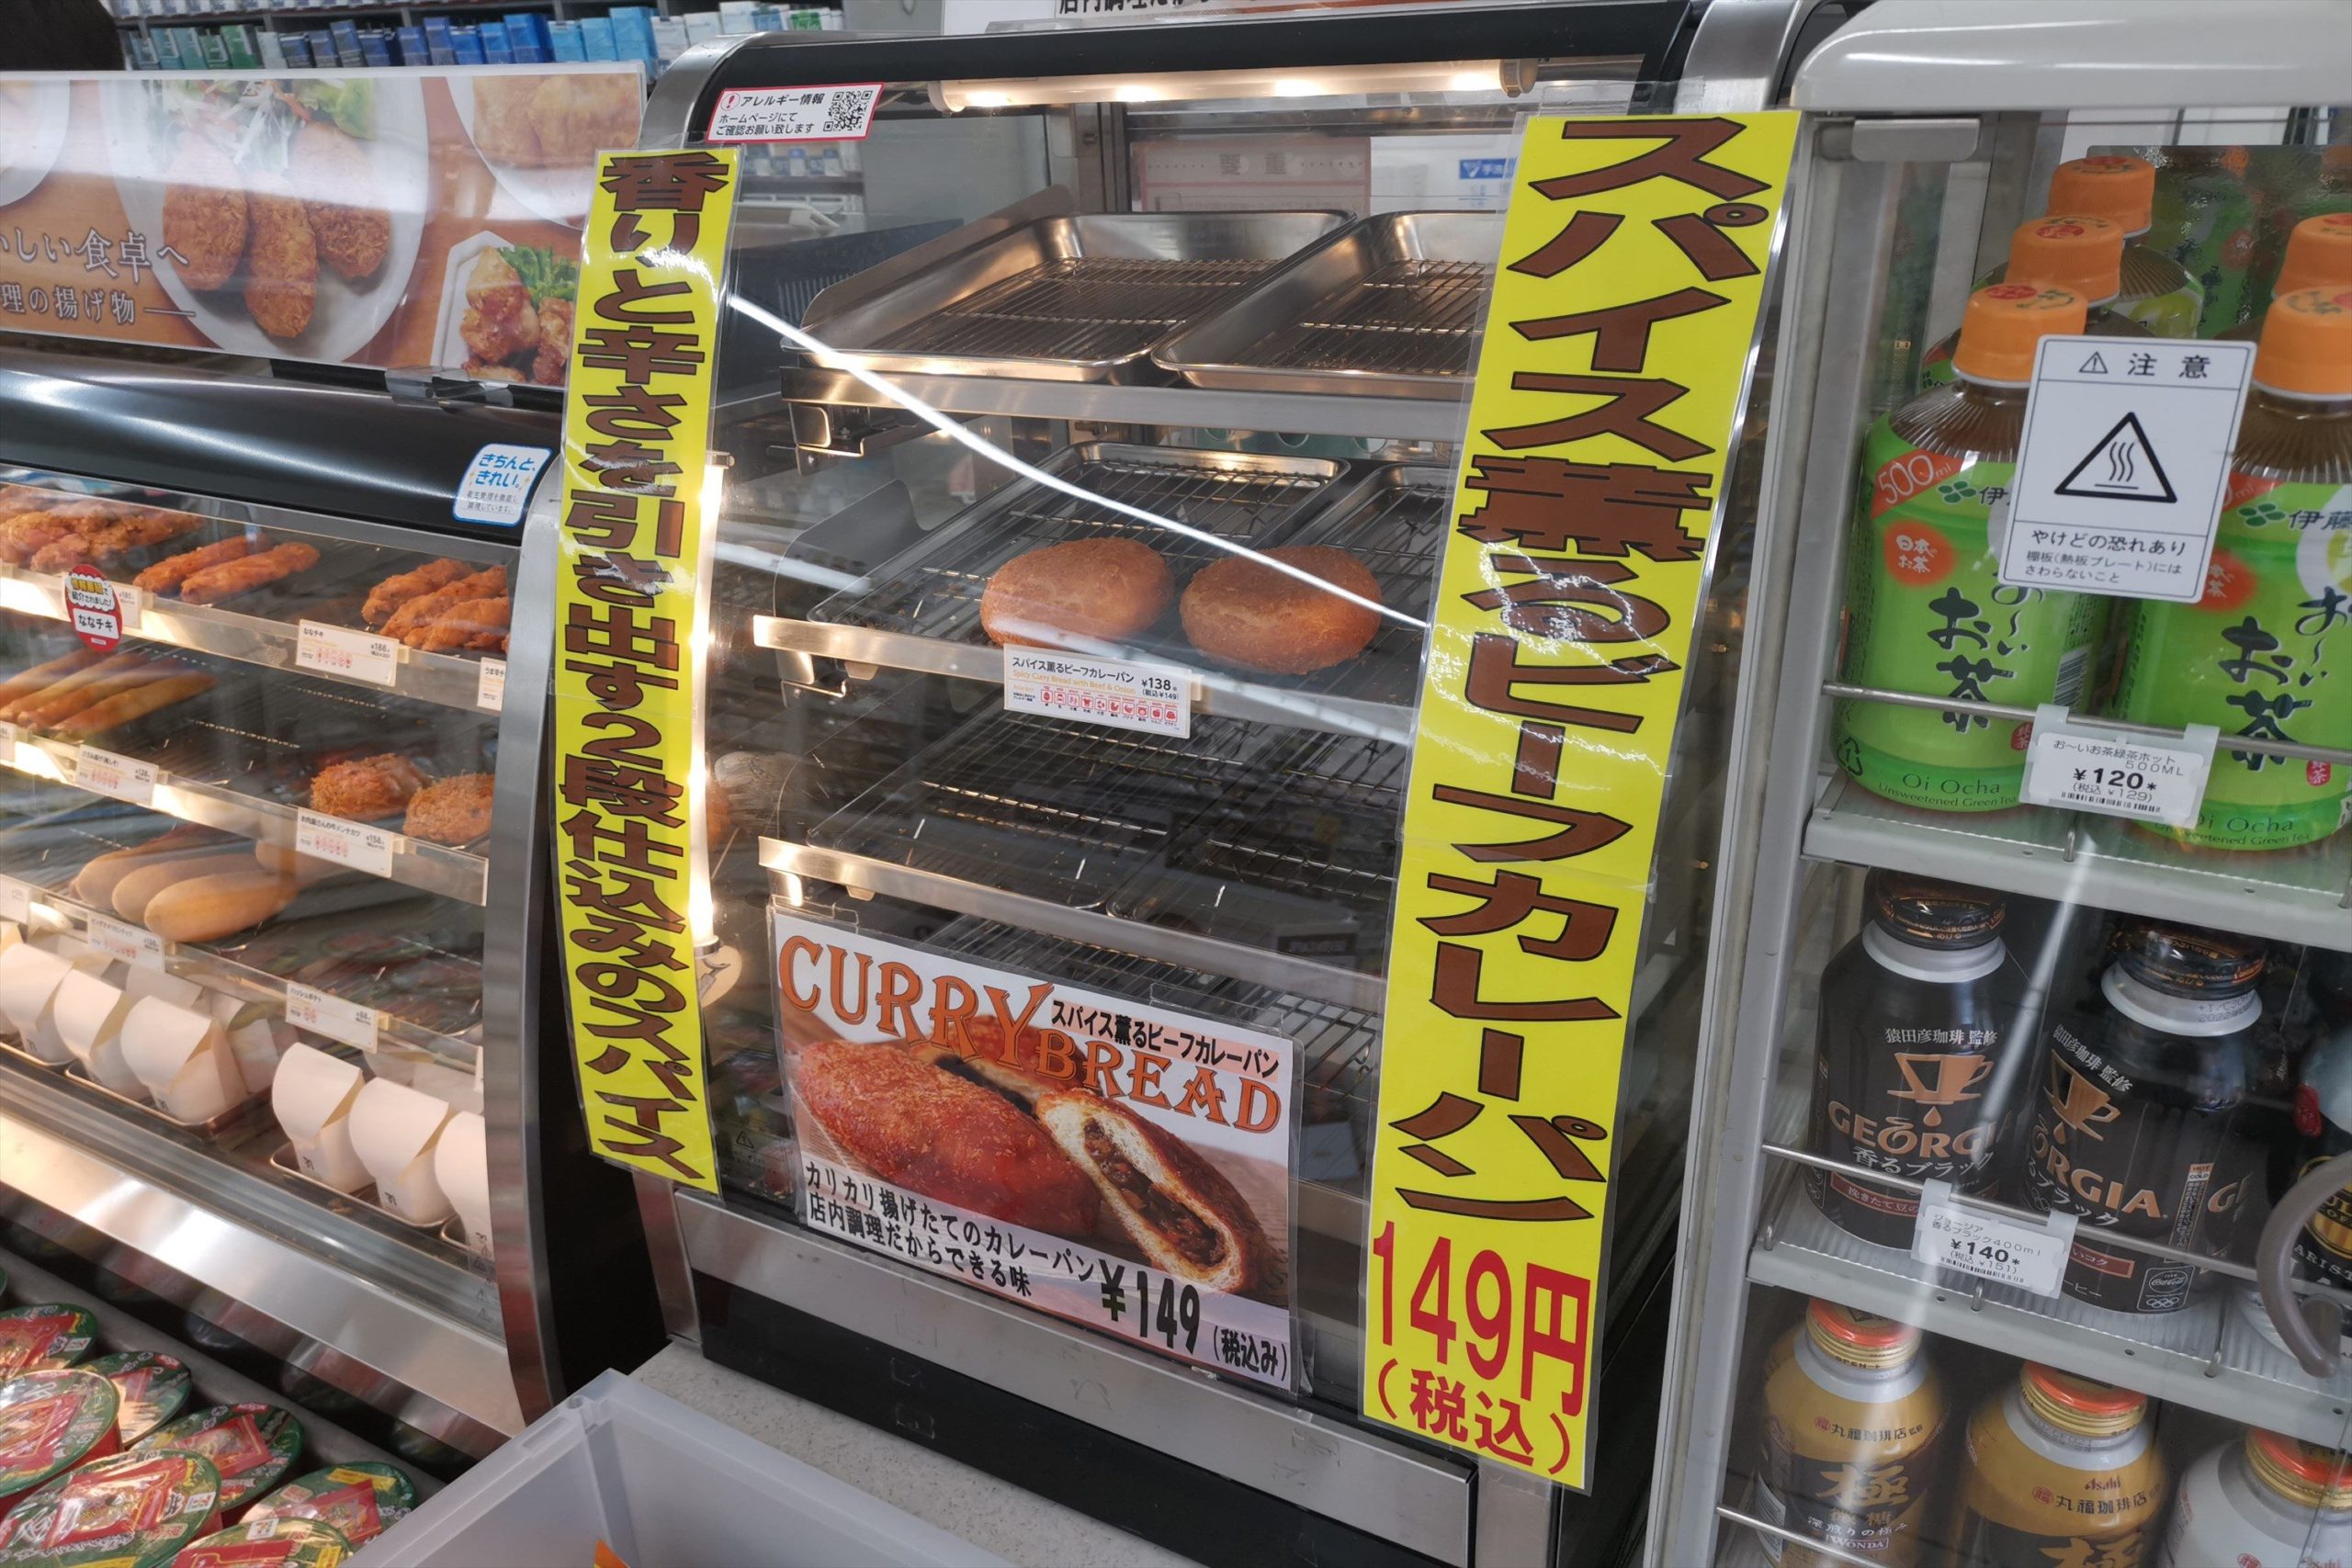 神奈川県限定のセブンイレブン 店で揚げるカレーパン が最強にウマい ニュースサイトしらべぇ